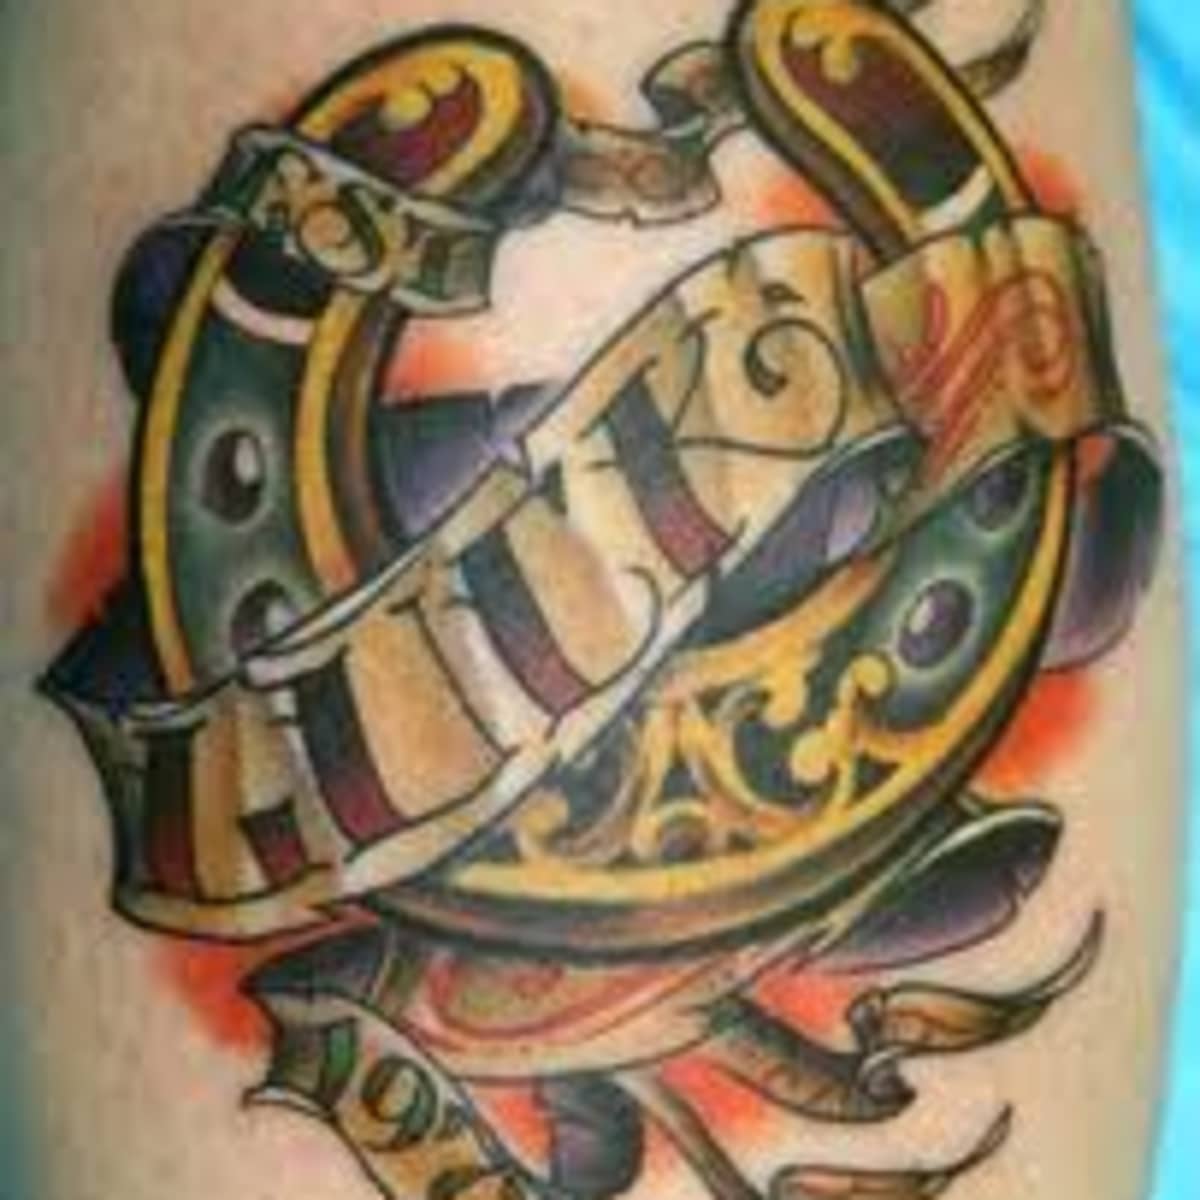 40 Horseshoe Tattoos  Tattoofanblog